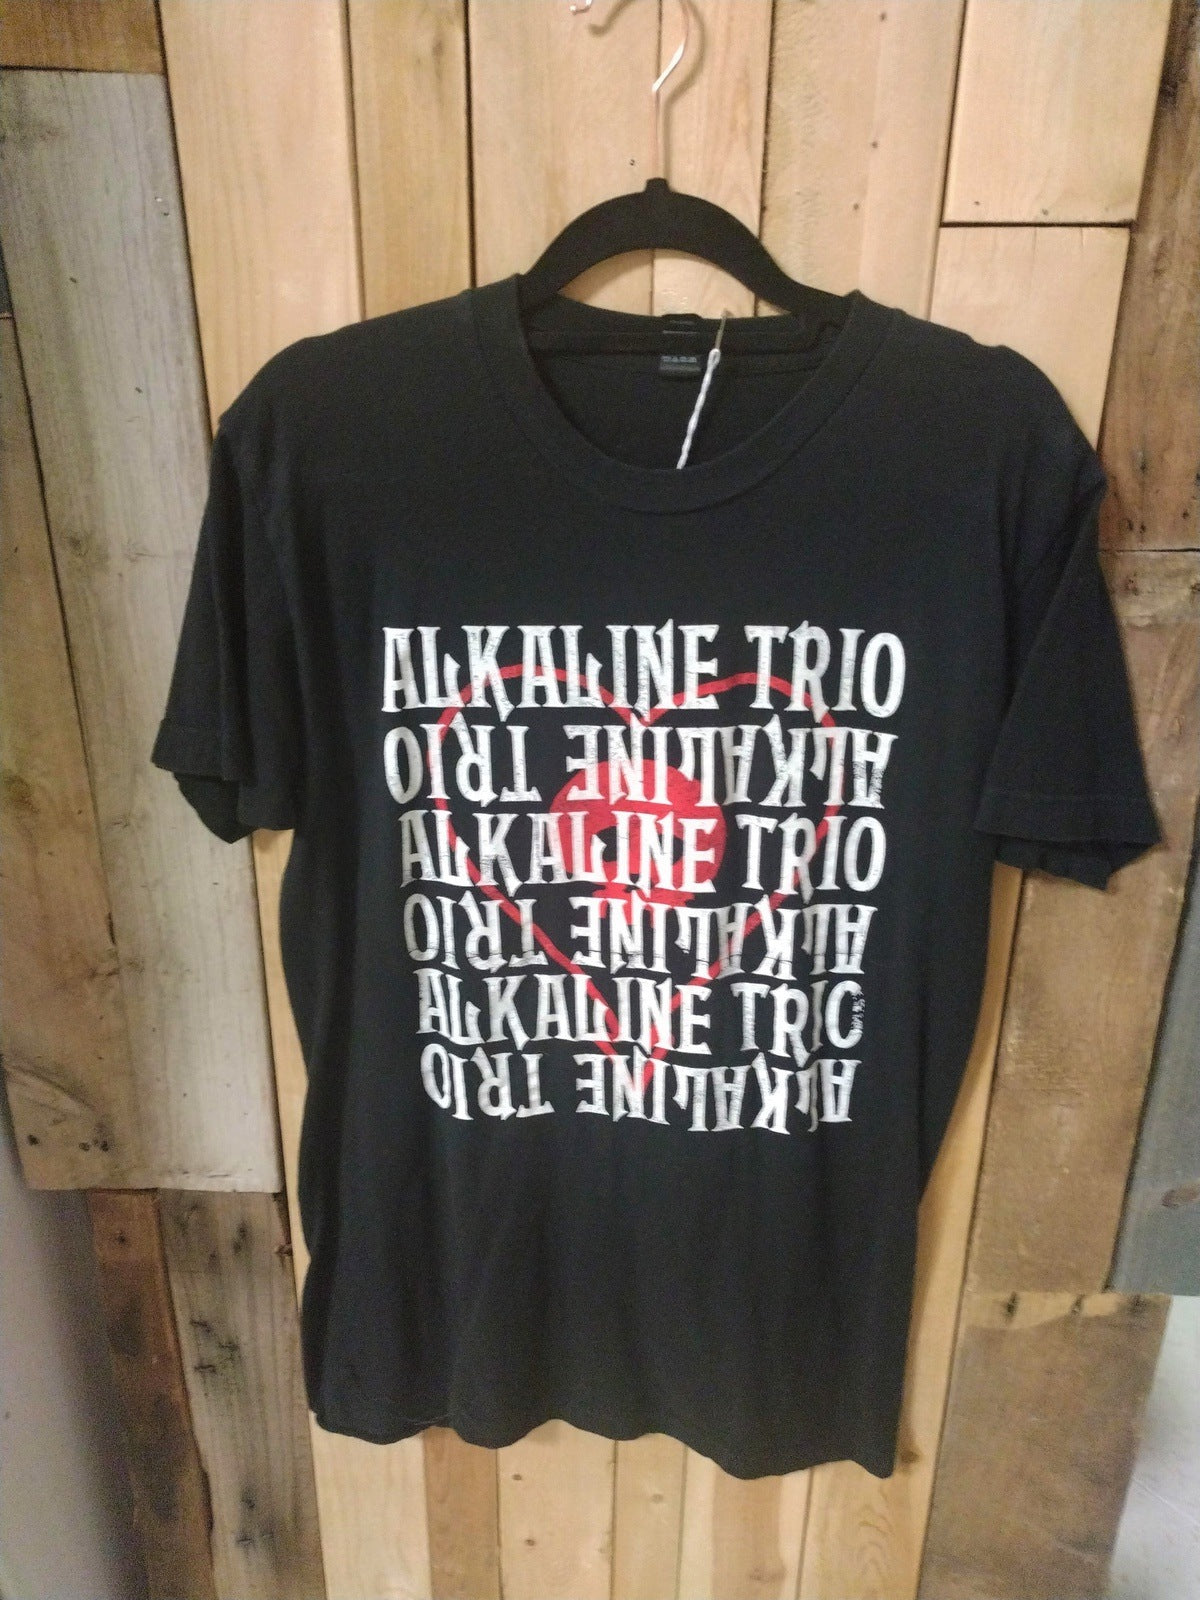 Alkaline Trio Tee Shirt Size Medium